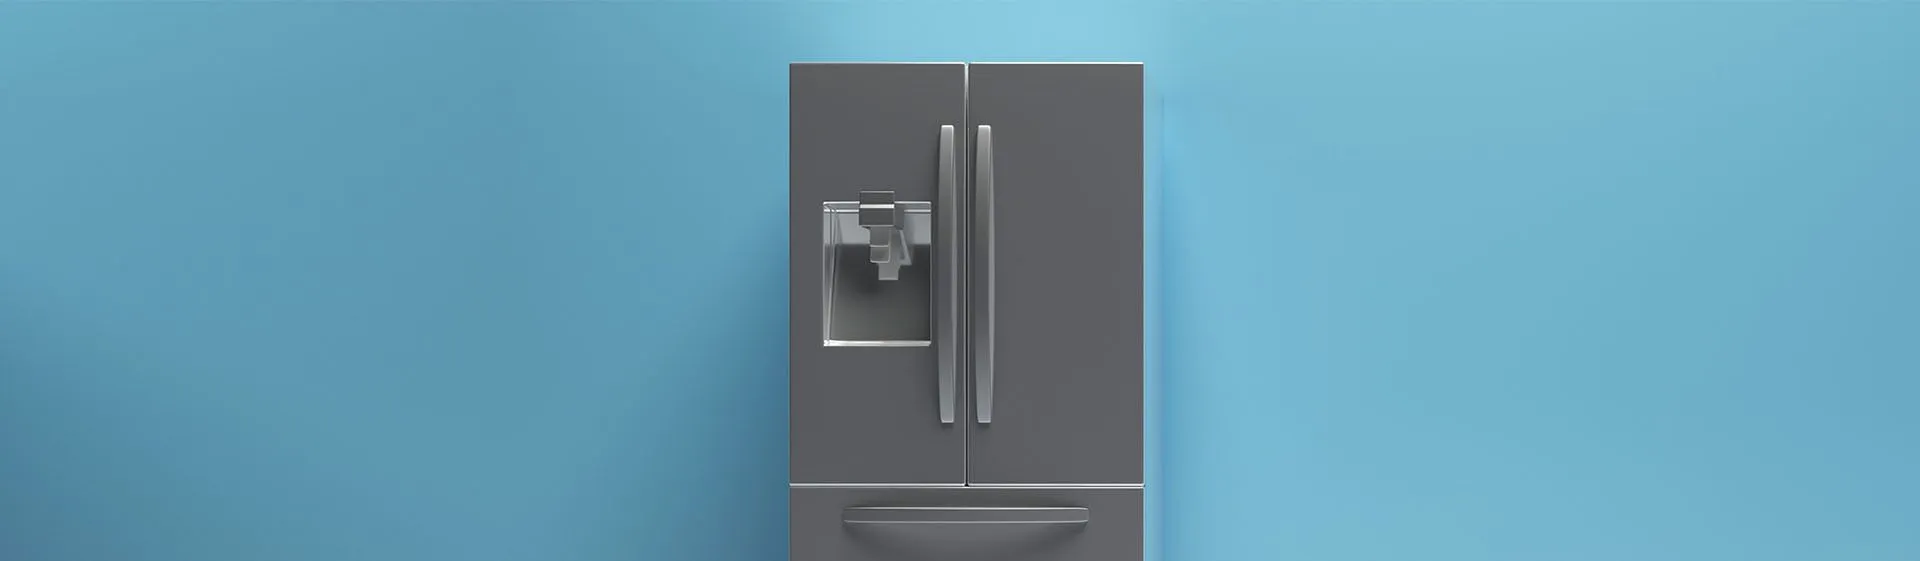 Capa do post: Comprar geladeira: como escolher a ideal para sua casa?